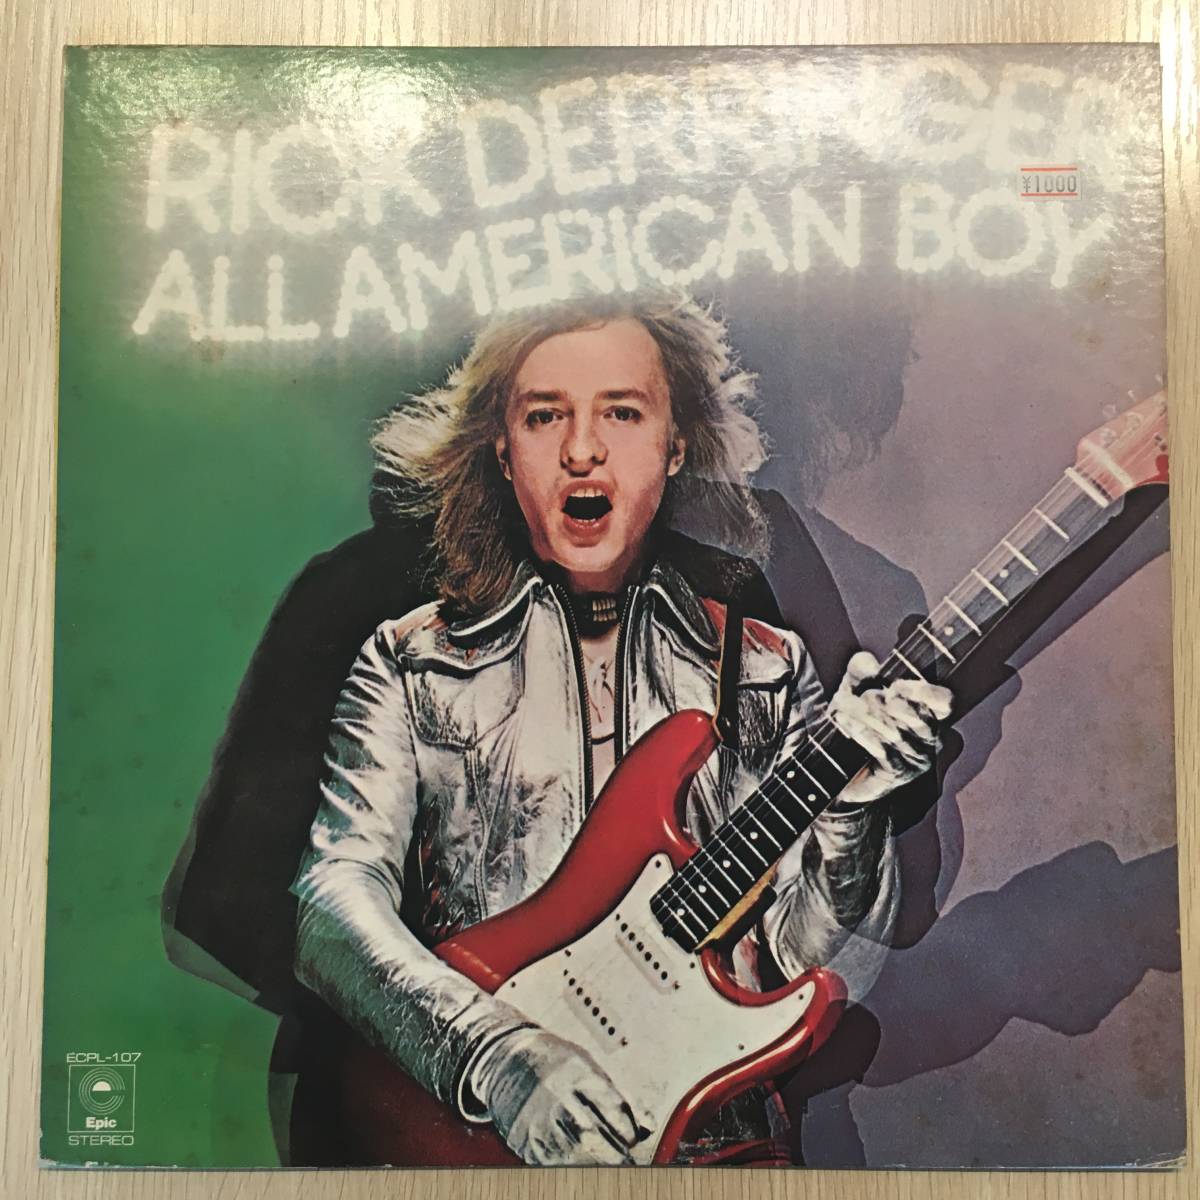 レコード LP リック デリンジャー RICK DERRINGER ALL AMERICAN BOY オール アメリカン ボーイ ロックンロール フーチー クー 見本盤 qL210_画像1